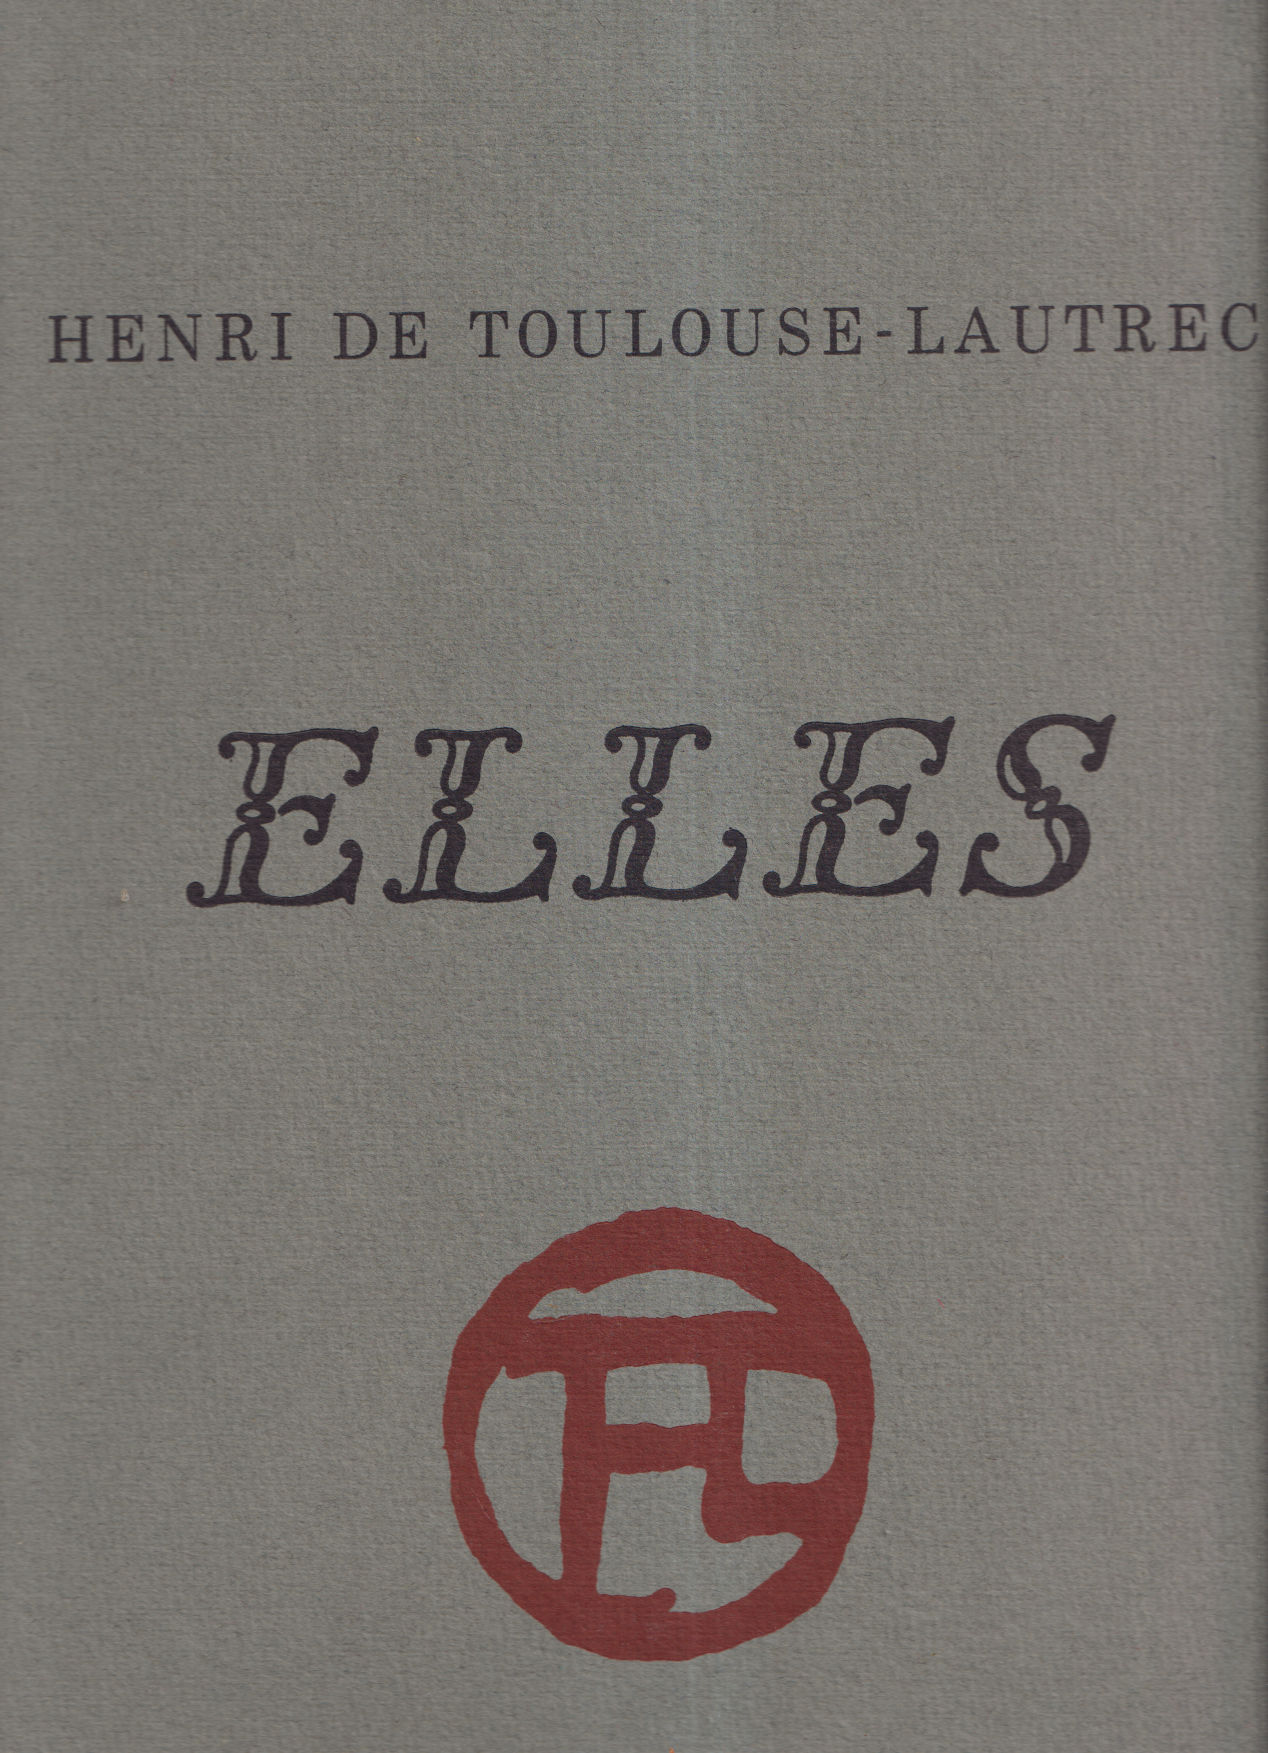 Henri de Toulouse-Lautrec - Elles - Melot, Michel (introduces)